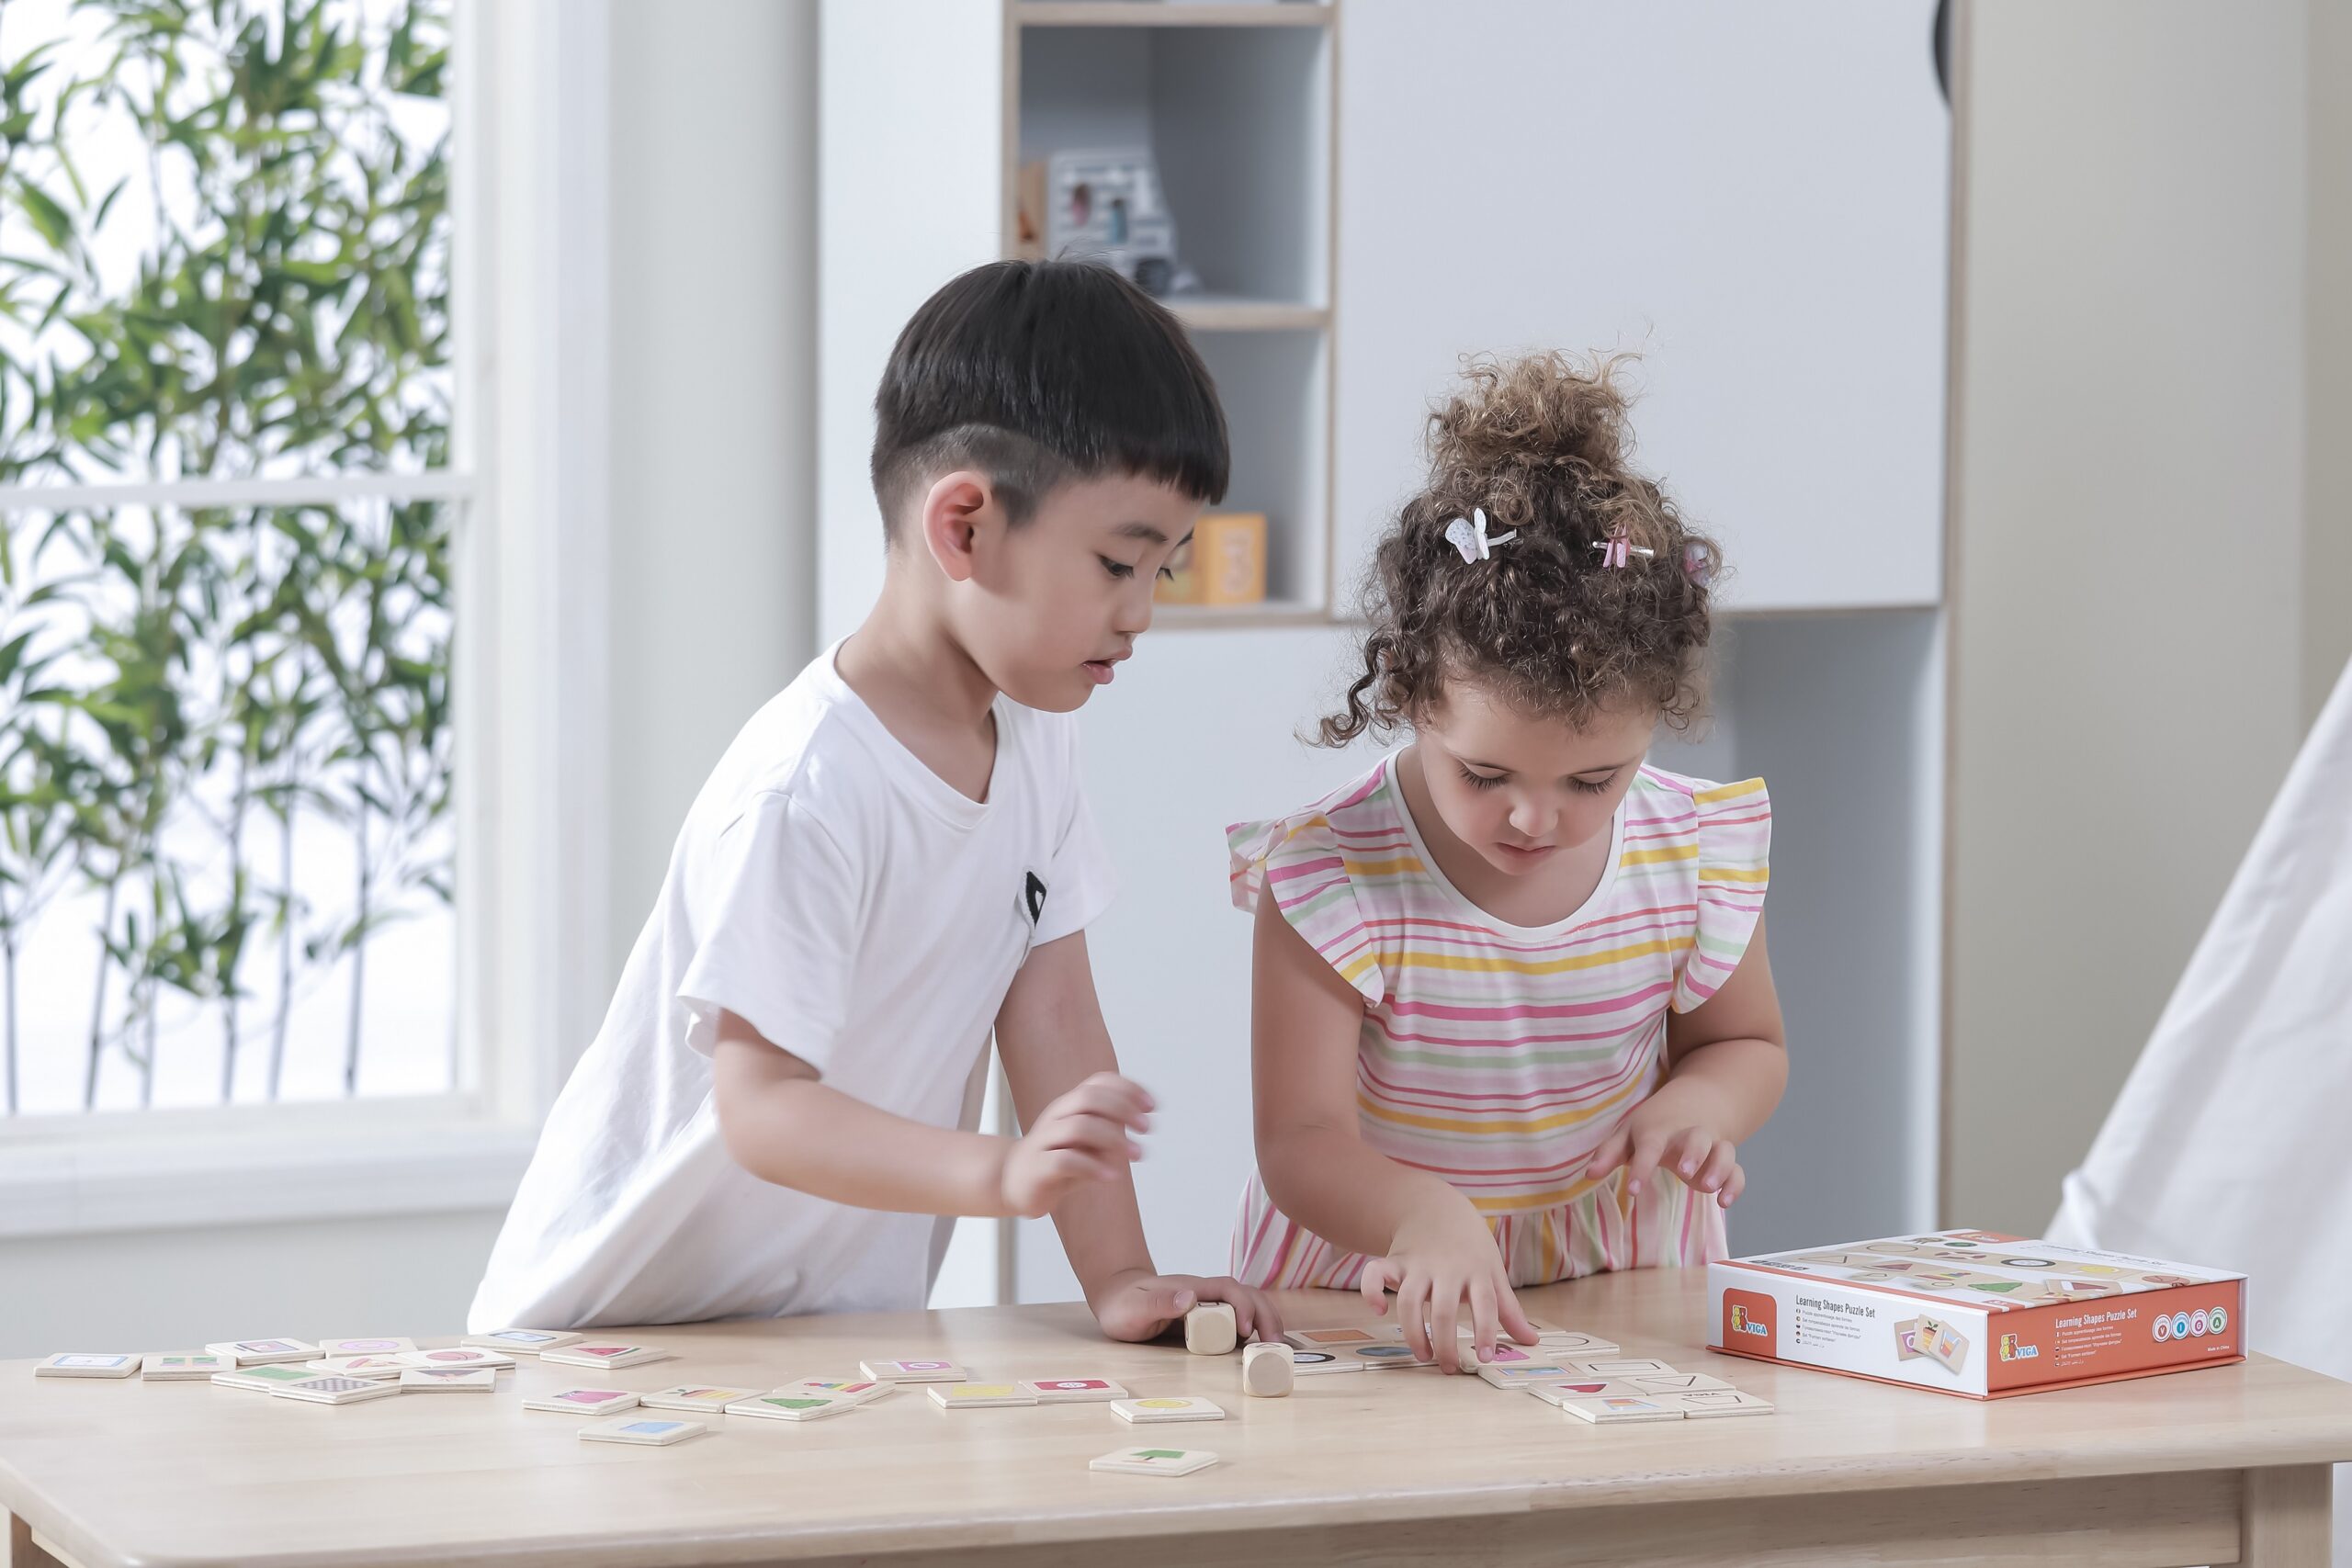 Gra edukacyjna - drewniana układanka - dopasuj kształty, 37 elementów, zabawka dla dzieci, Viga